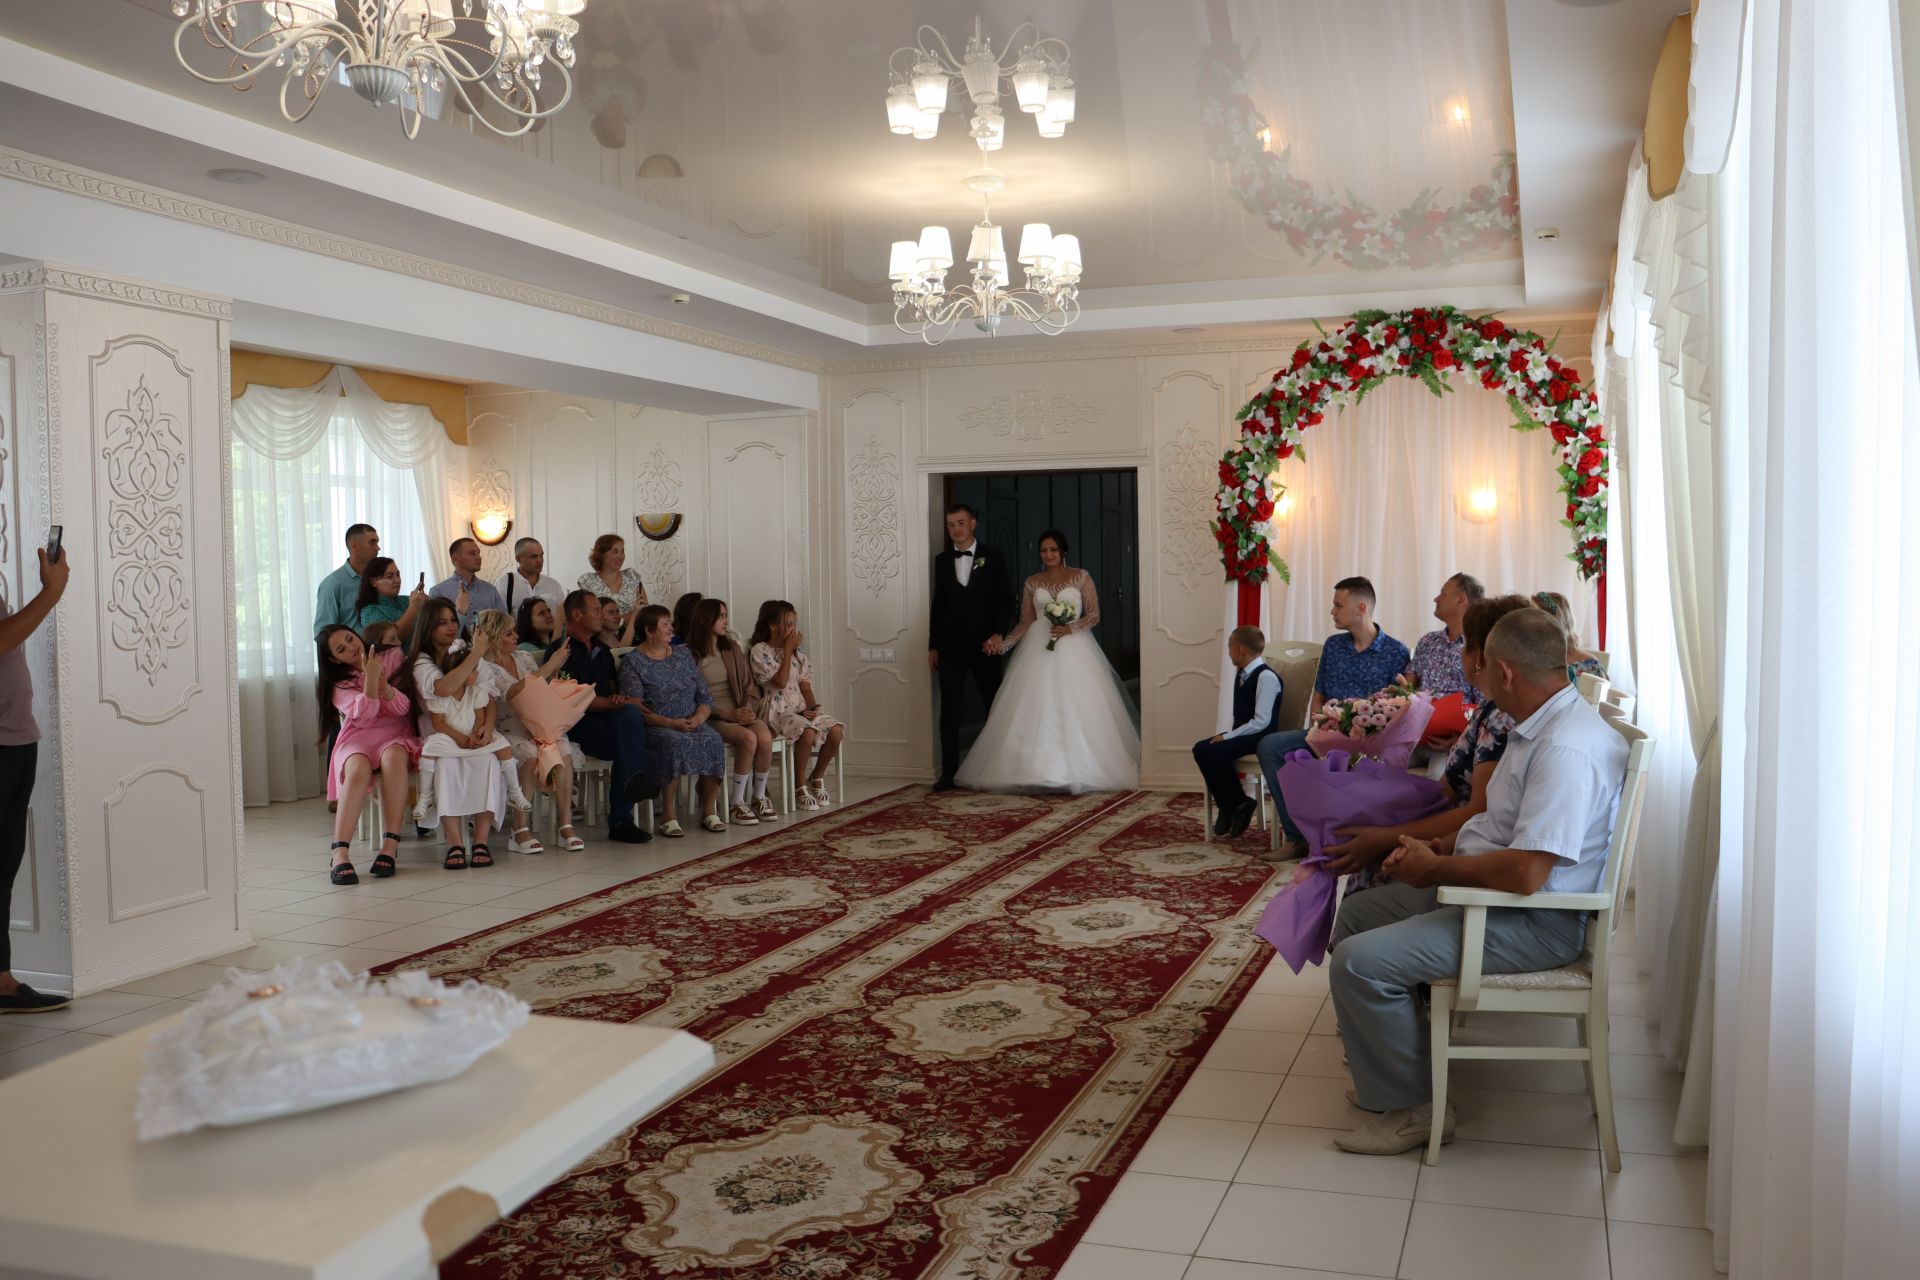 В Алькеевском районном ЗАГСе зарегистрирован брак Инзиля и Ильвины Зариповых